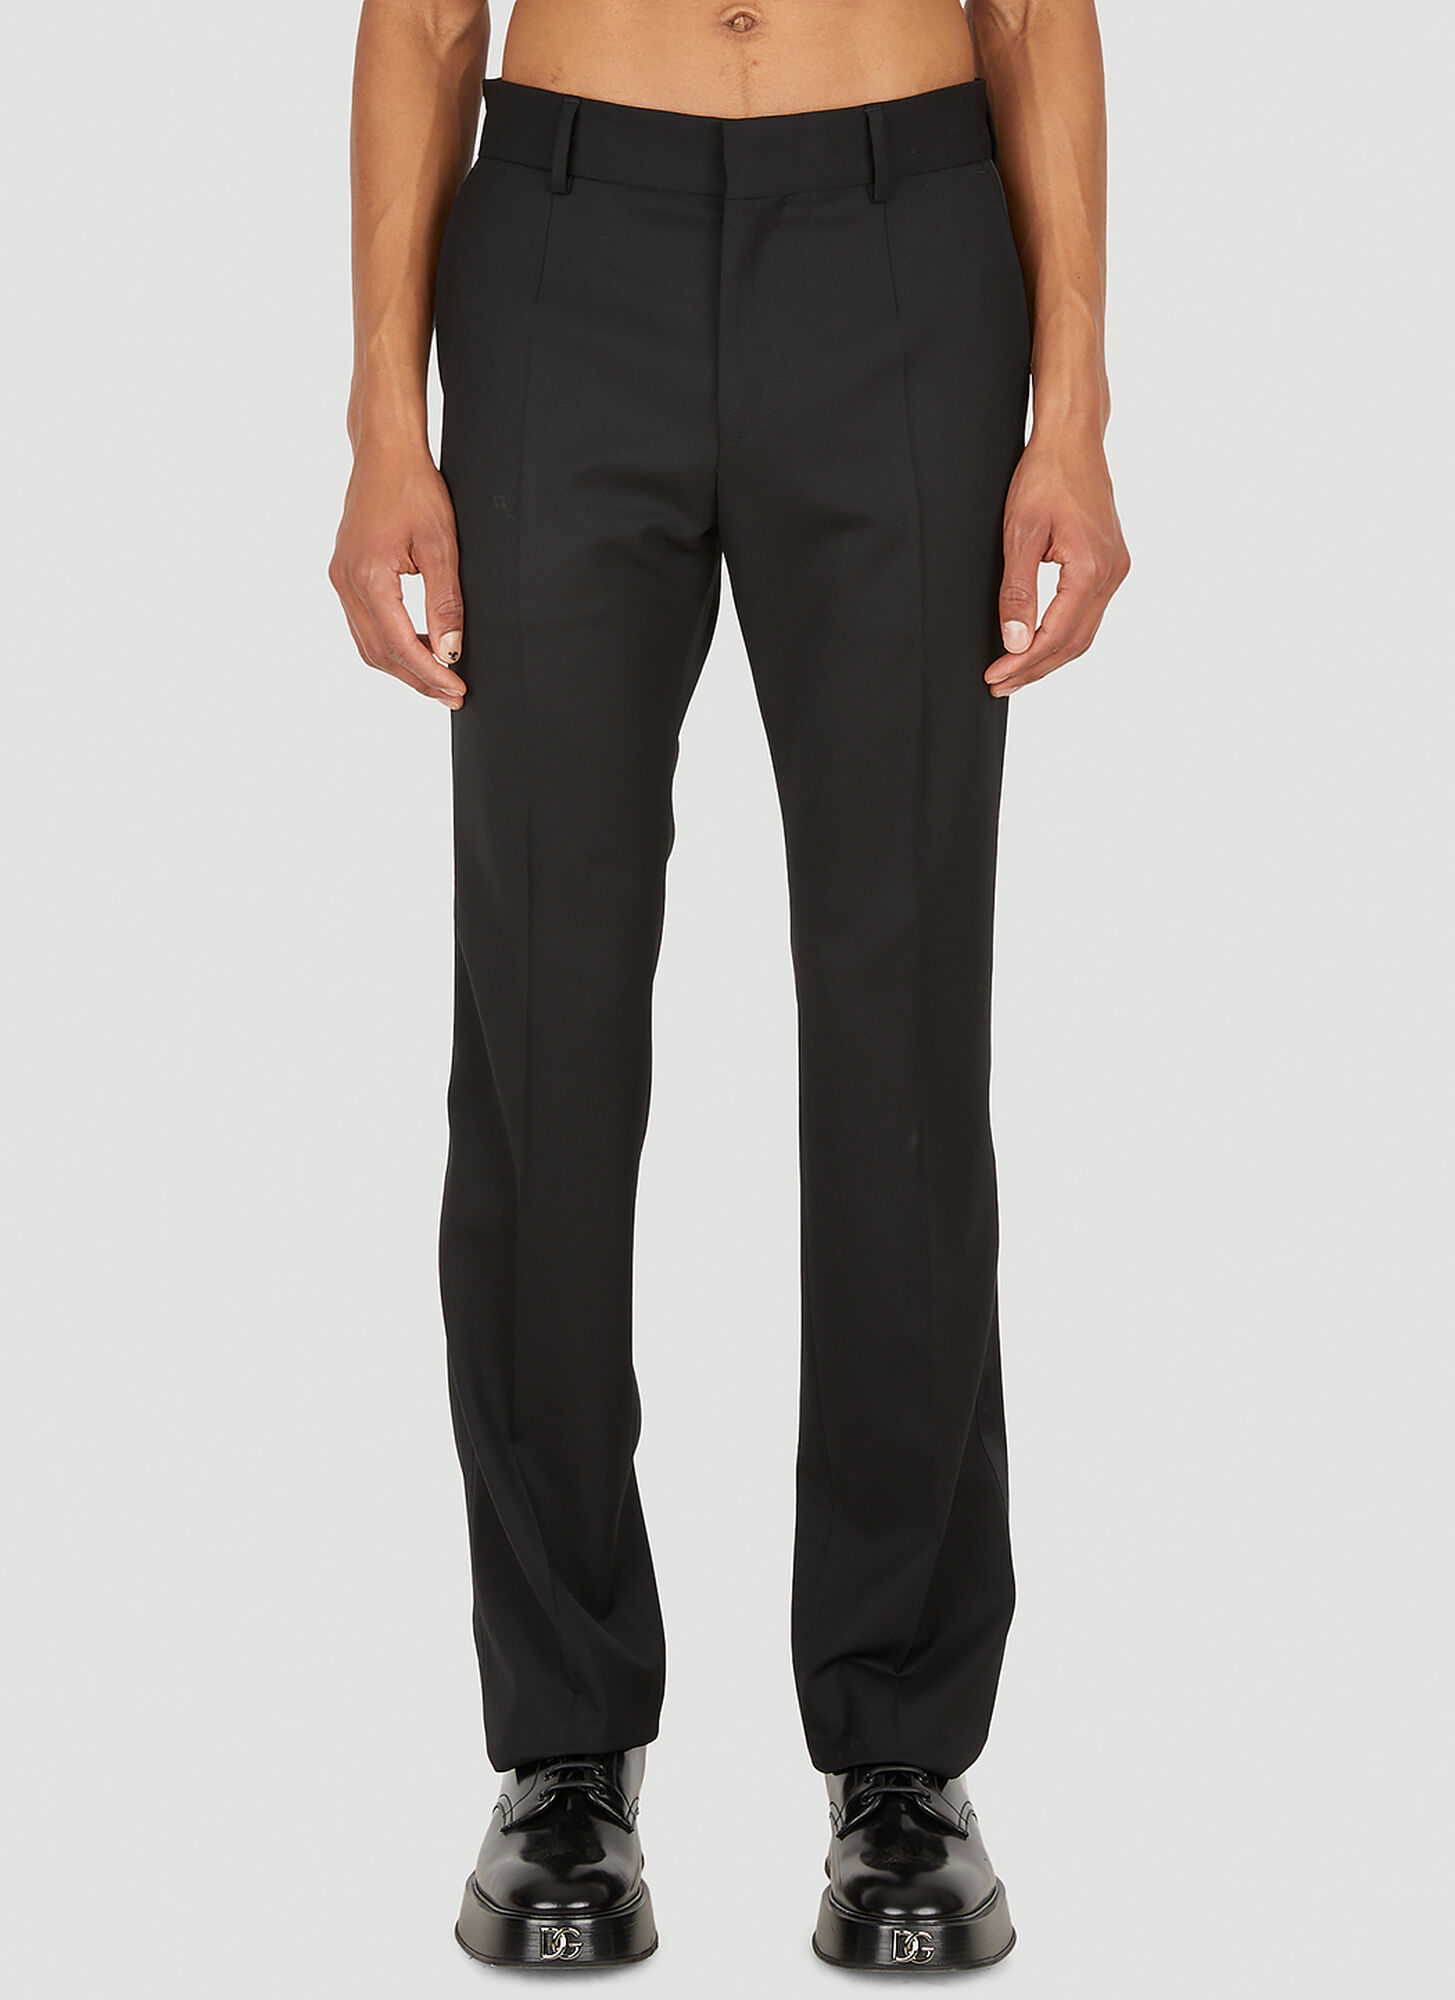 Dolce & Gabbana Satin Trimmed Tuxedo Suit Pants